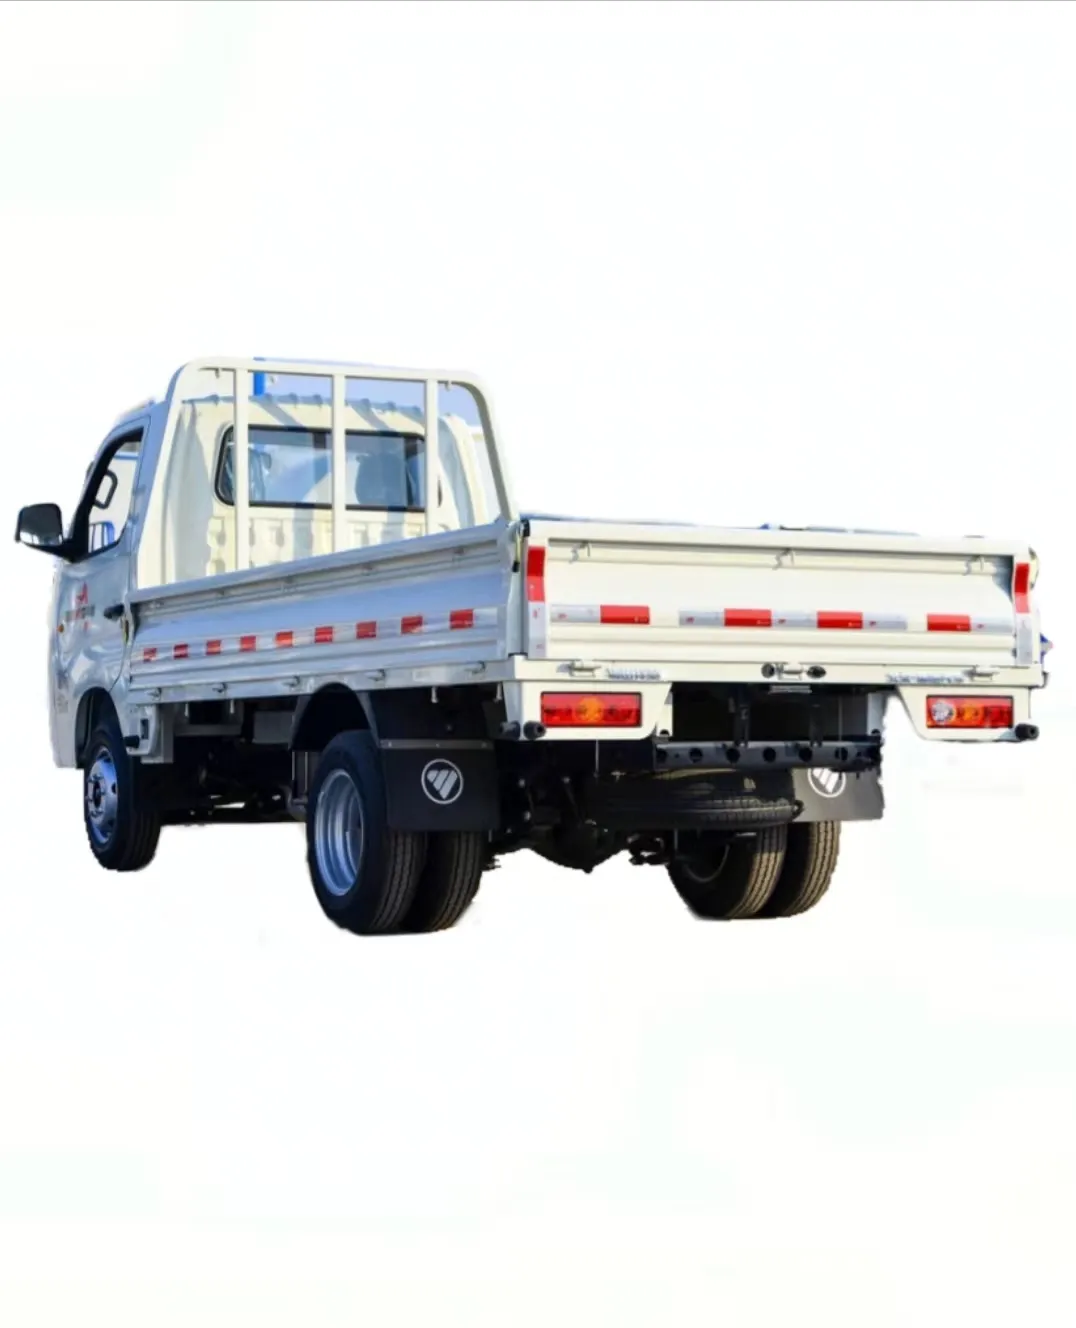 Foton Euro 5 diesel piccolo camion carico leggero 1-2 ton può essere personalizzato e in magazzino